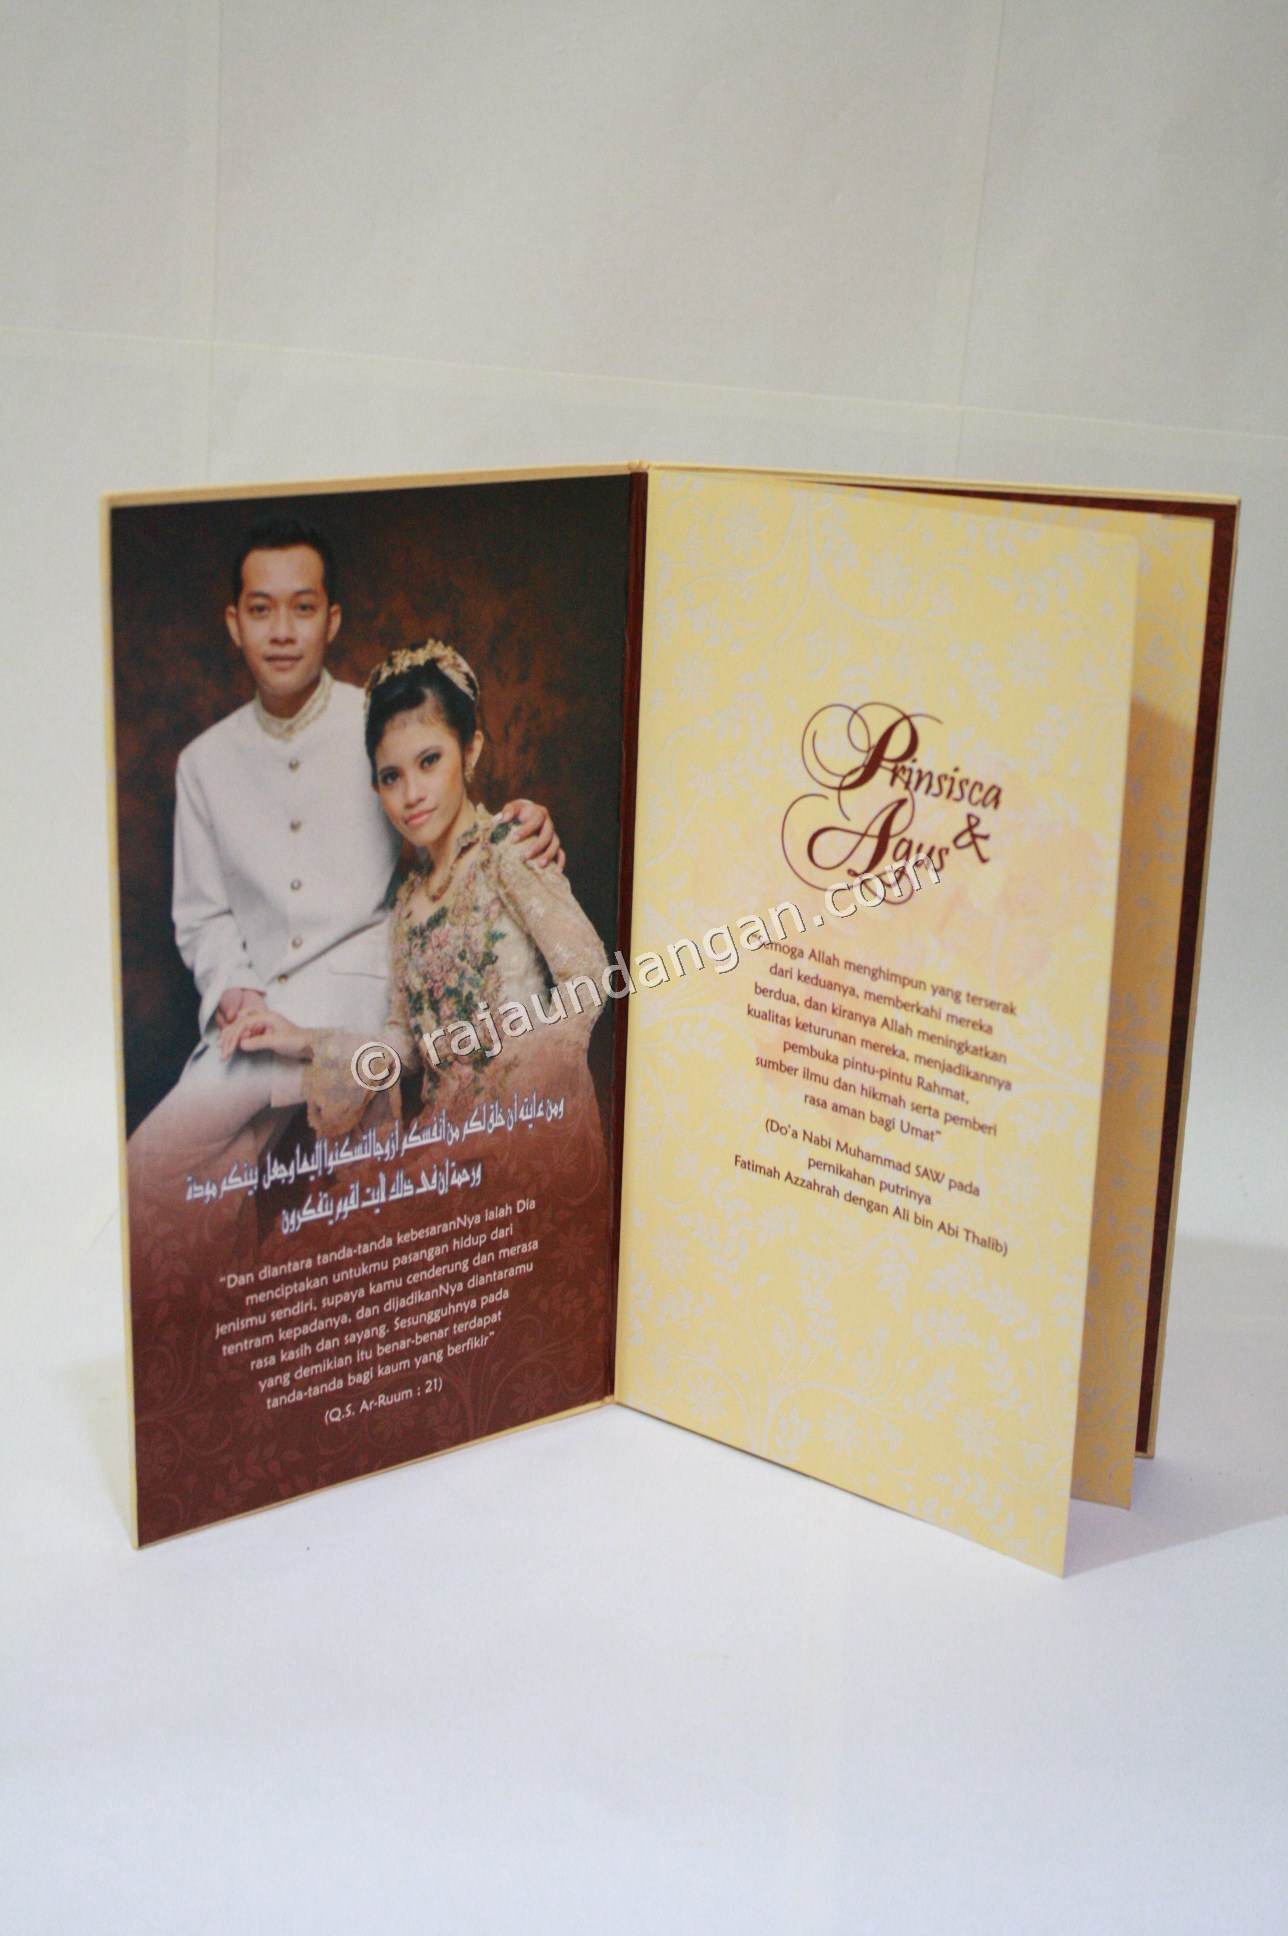 Contoh Kartu Undangan Pernikahan Hardcover Prinsisca dan Agus 4 - Pesan Wedding Invitations Simple di Ploso